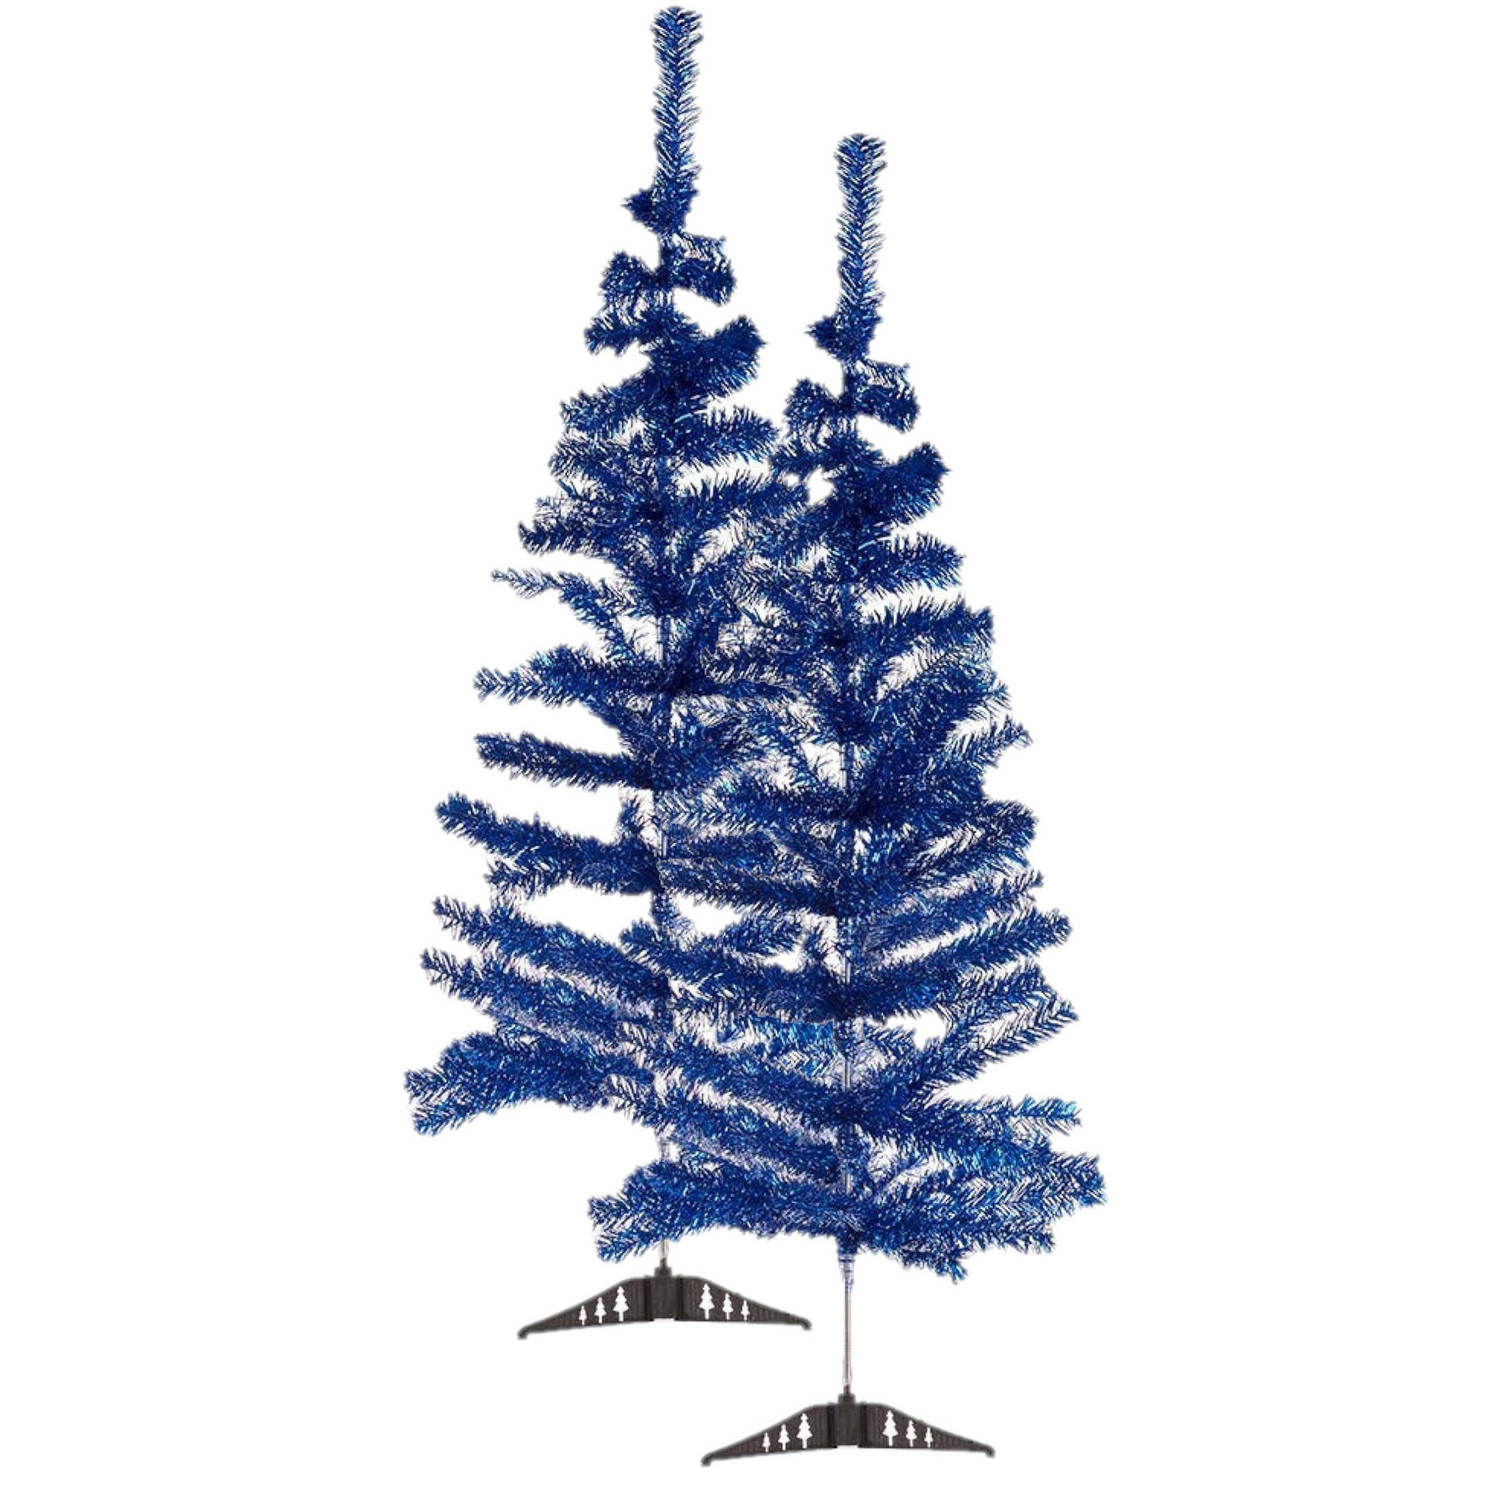 2x stuks kleine ijsblauwe kerstbomen van 120 cm - Kunstkerstboom